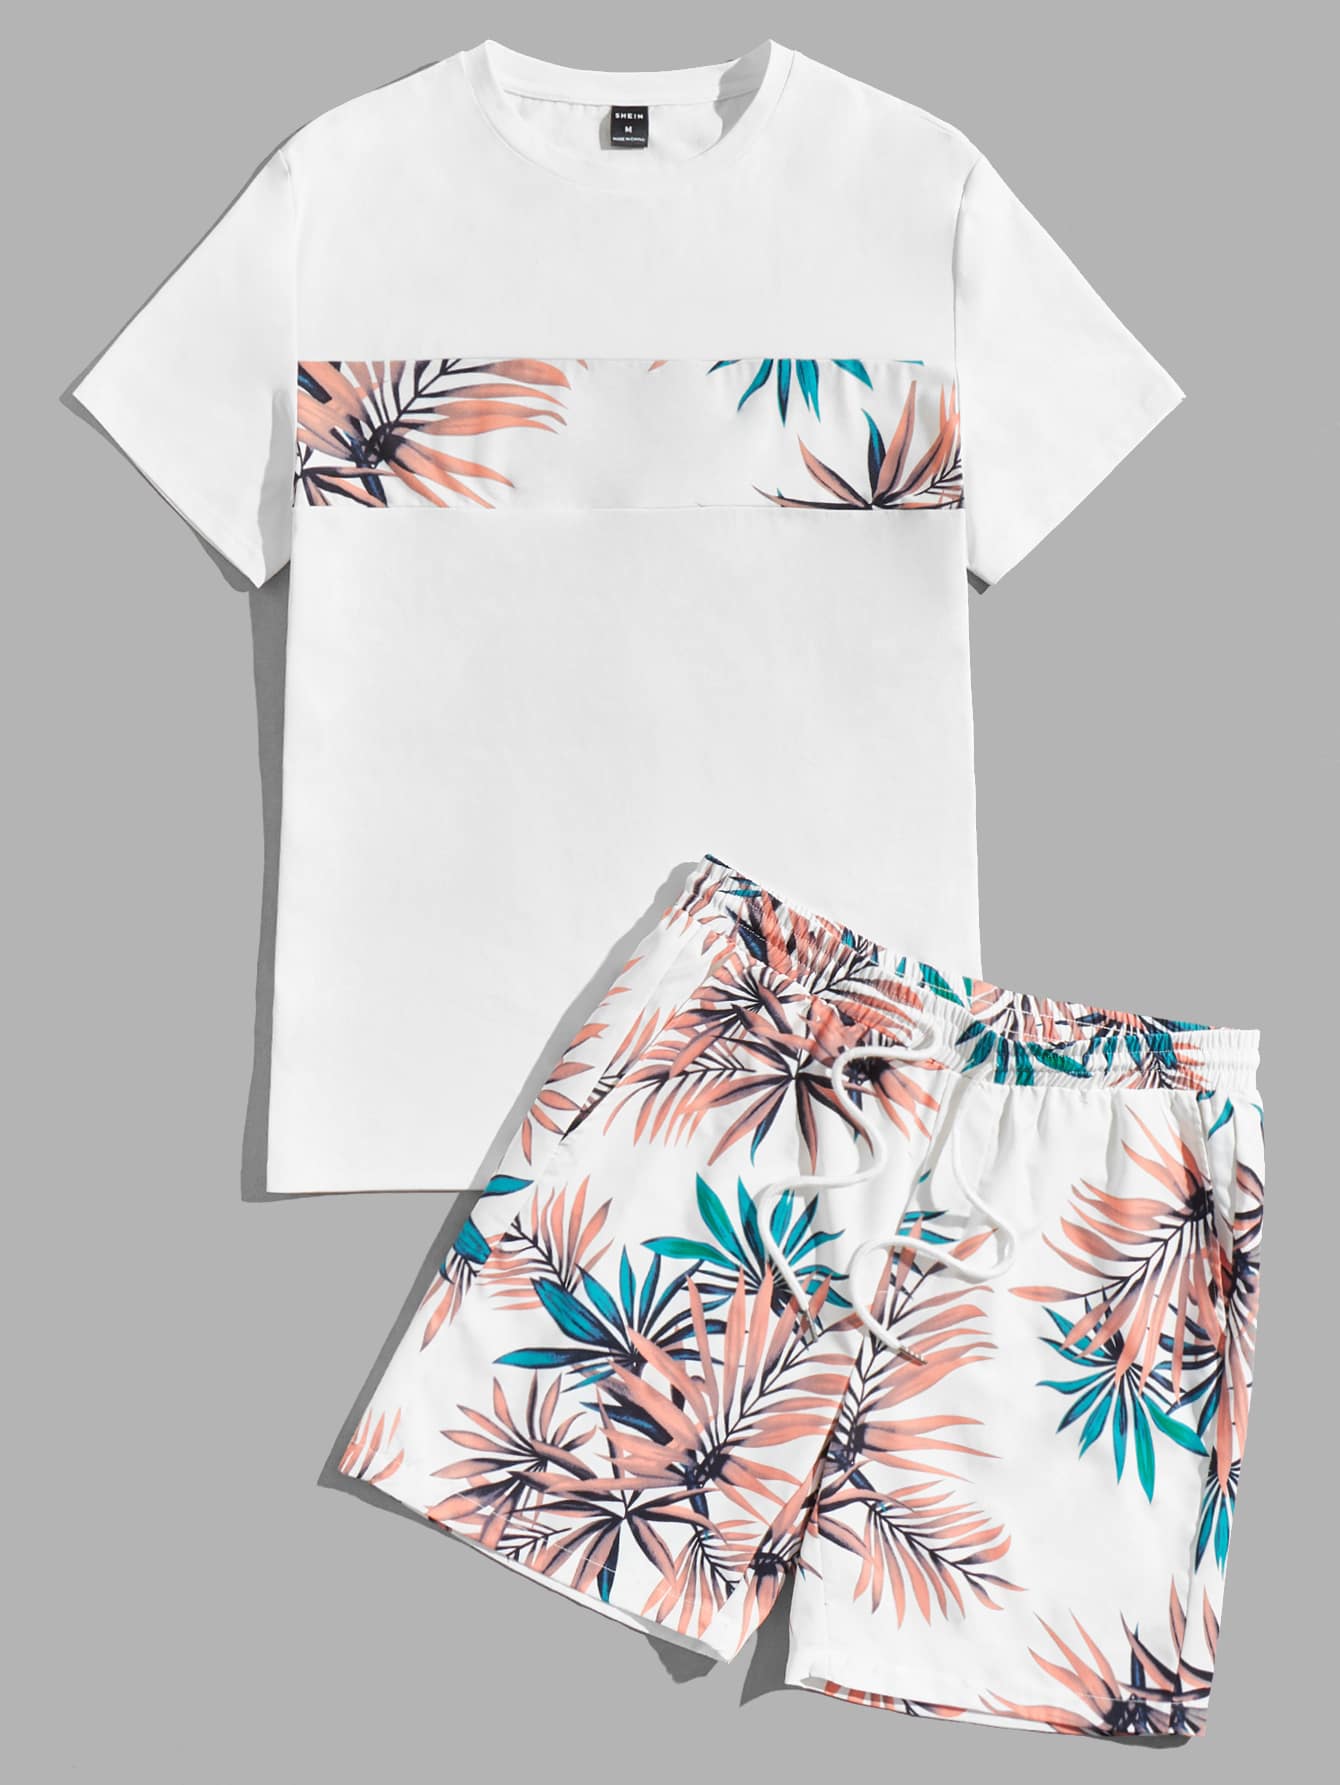 Мужская футболка и шорты Manfinity Chillmode в стиле пэчворк с короткими рукавами и принтом листьев, белый